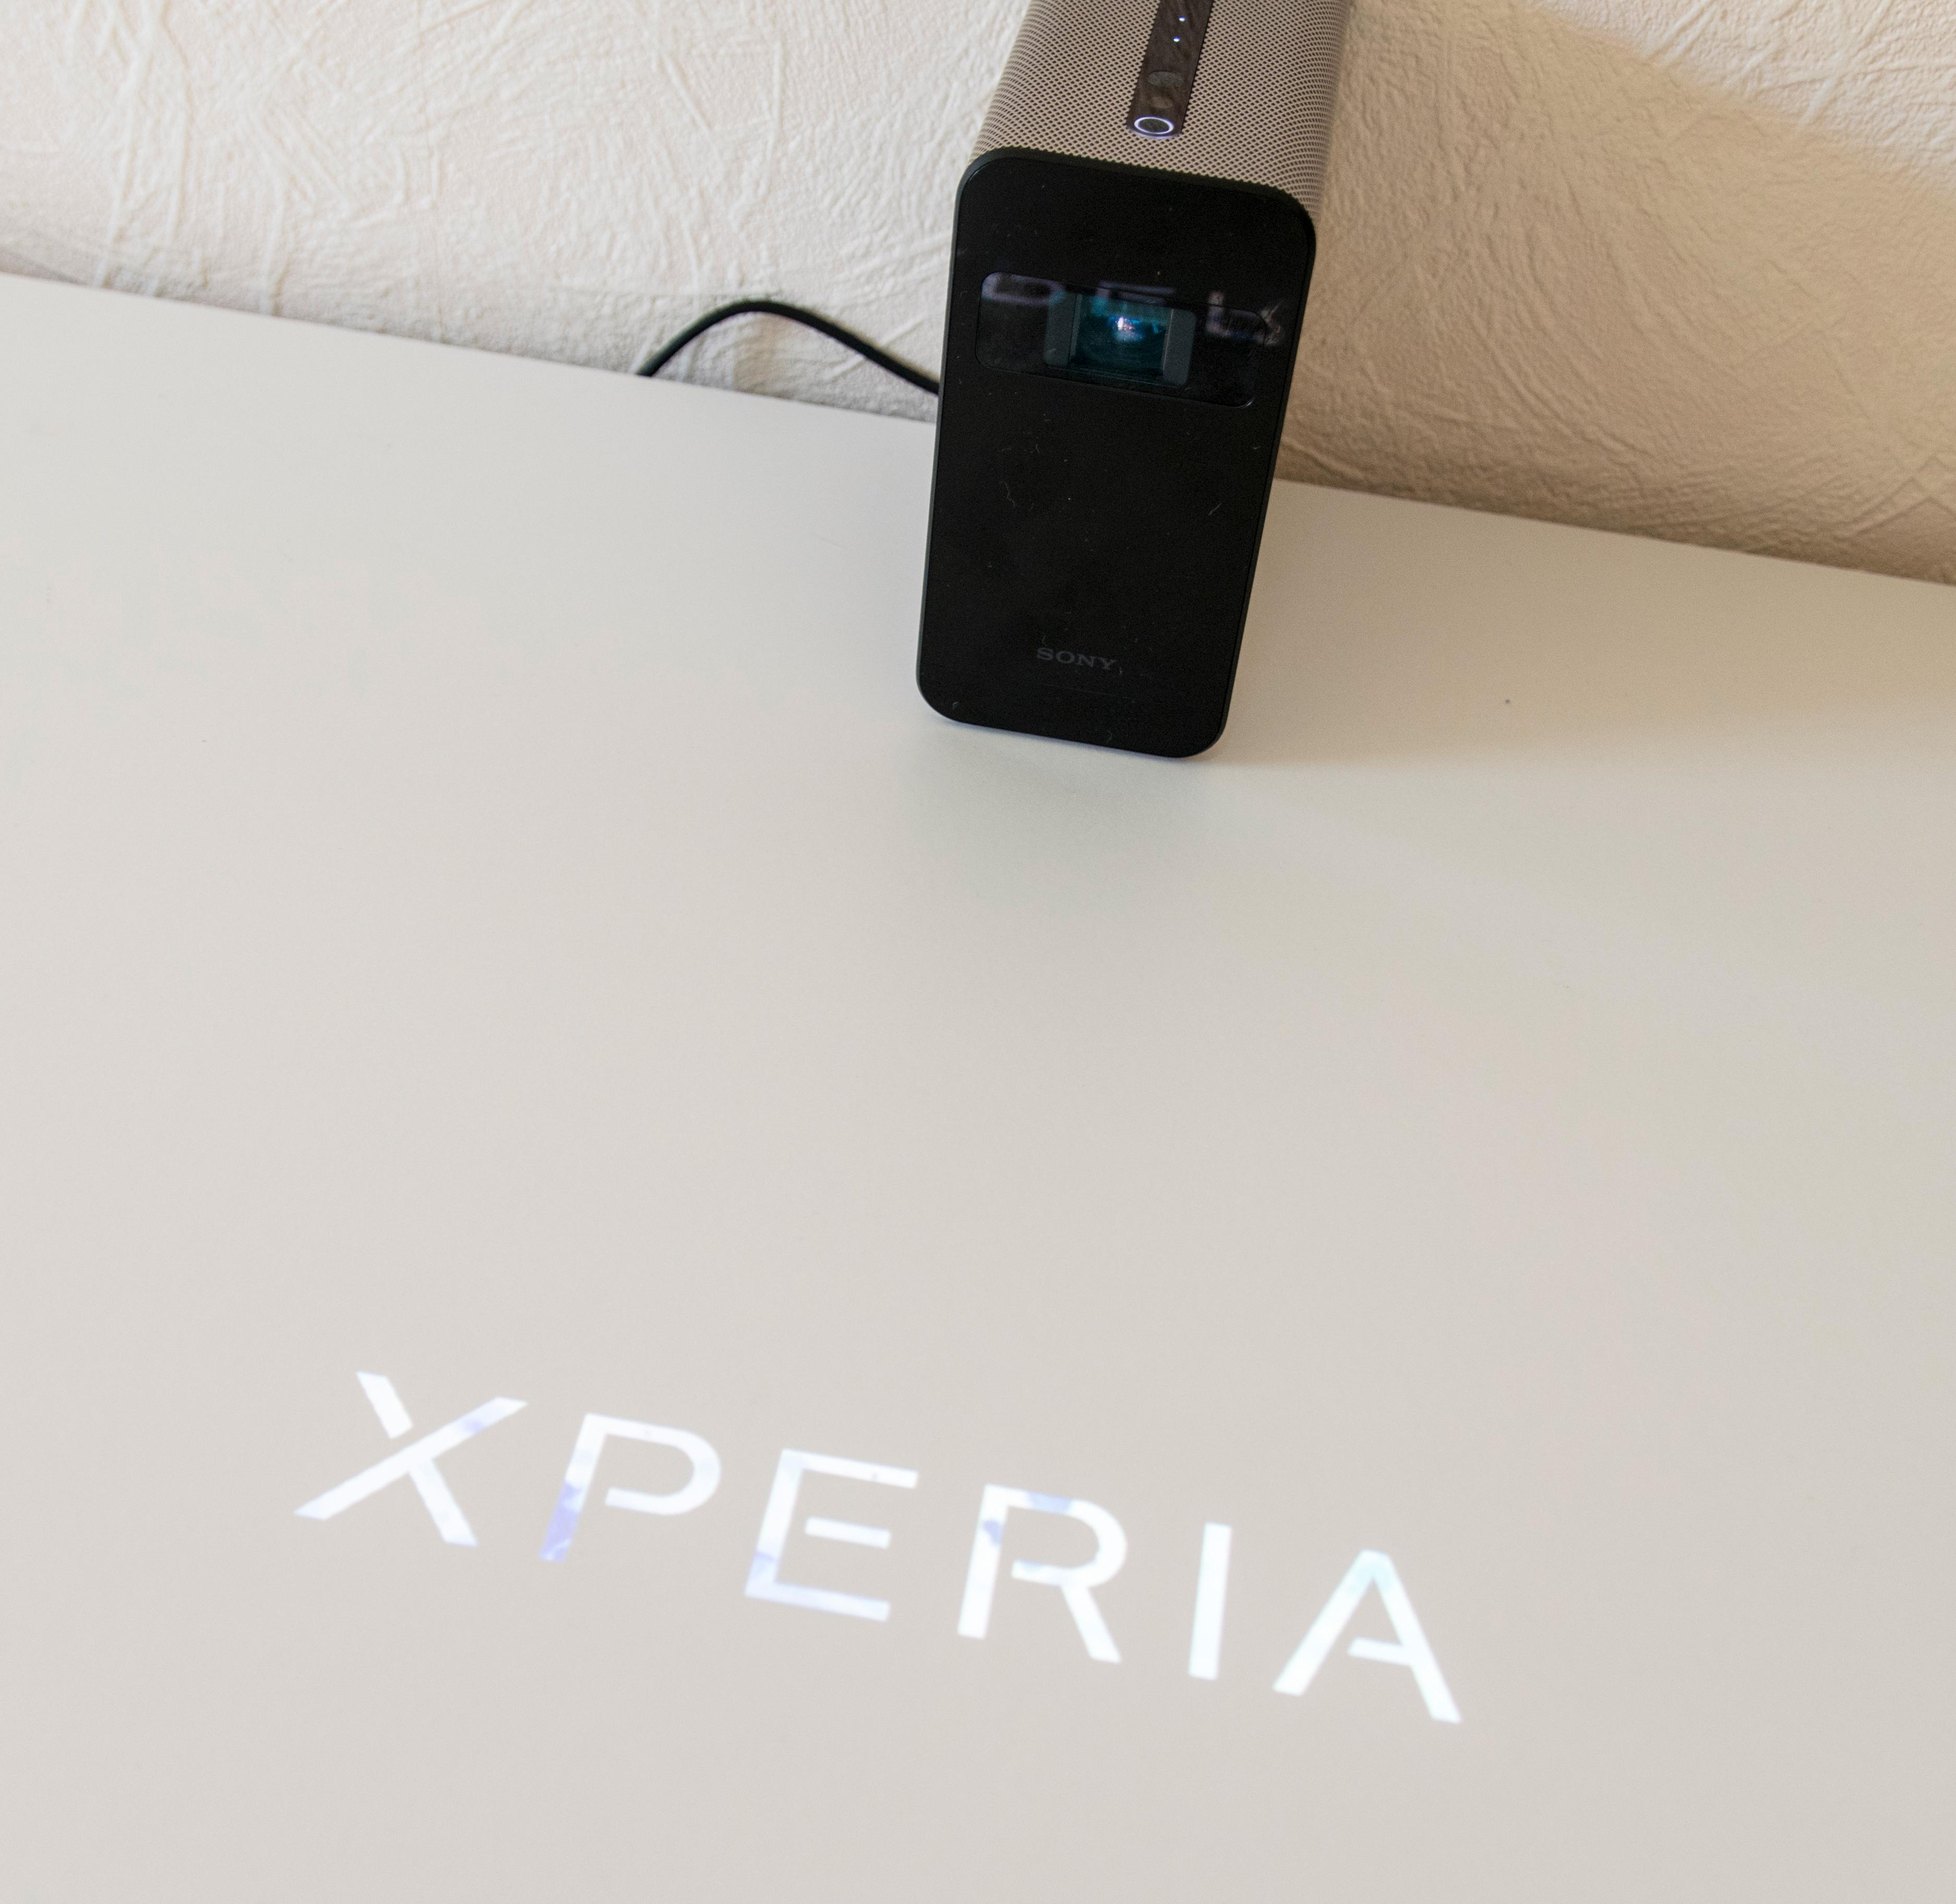 Helt hvite, matte overflater er favorittene til Xperia Touch. Den kan også brukes på andre flater, men da blir ikke bildet allverdens, og blir det for blankt slutter berøringssensoren å virke skikkelig.